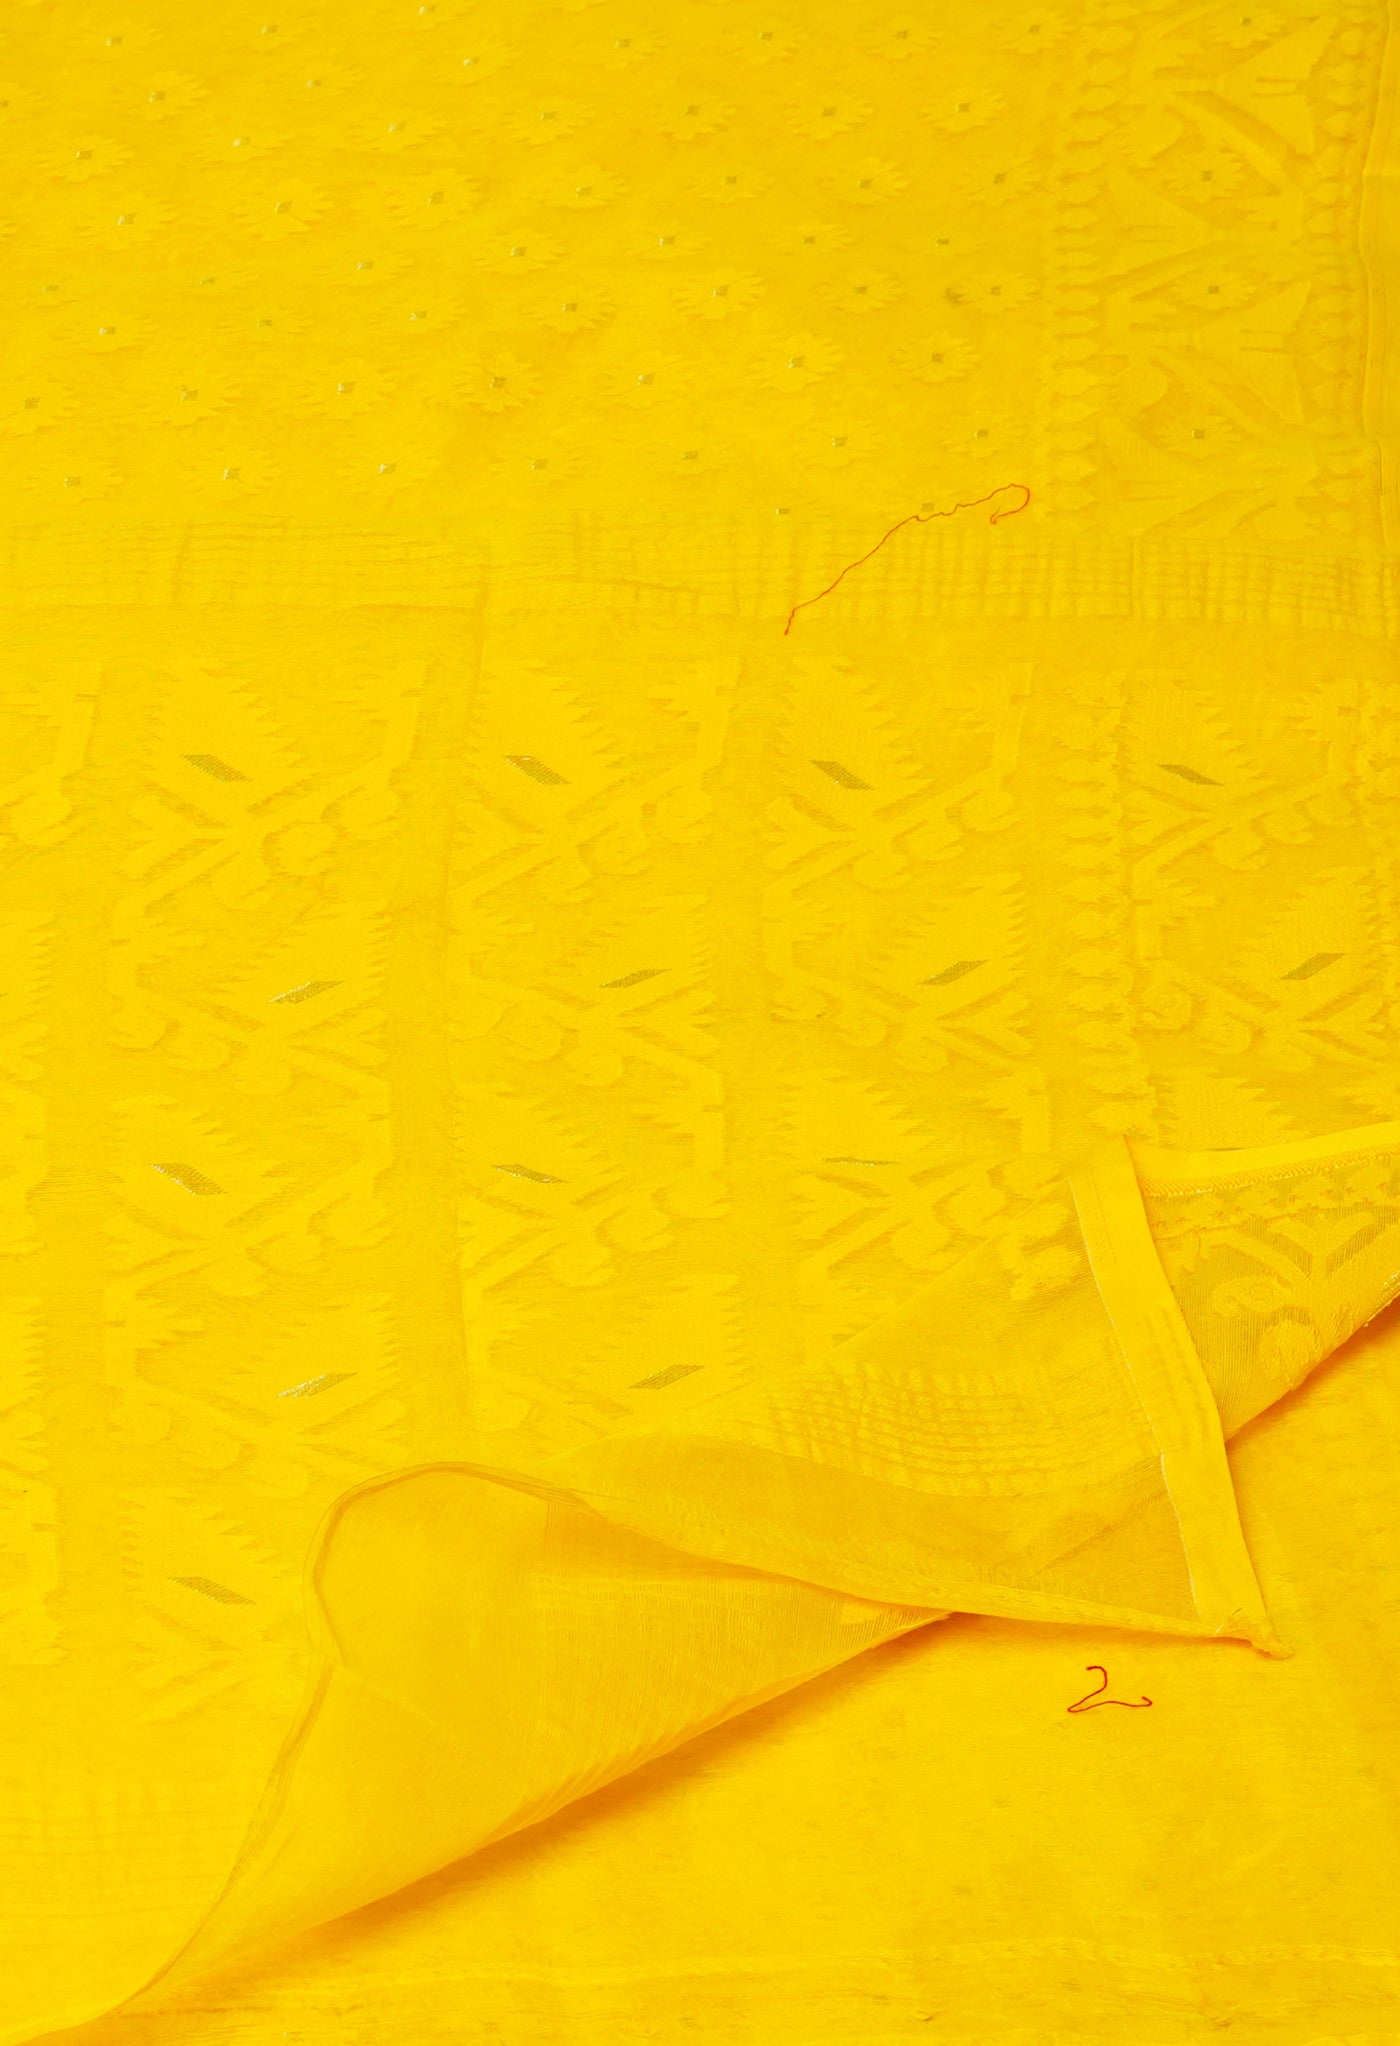 Yellow Pure Handloom Handloom Dhaka Jamdhani Bengal Cotton Saree-UNM71876